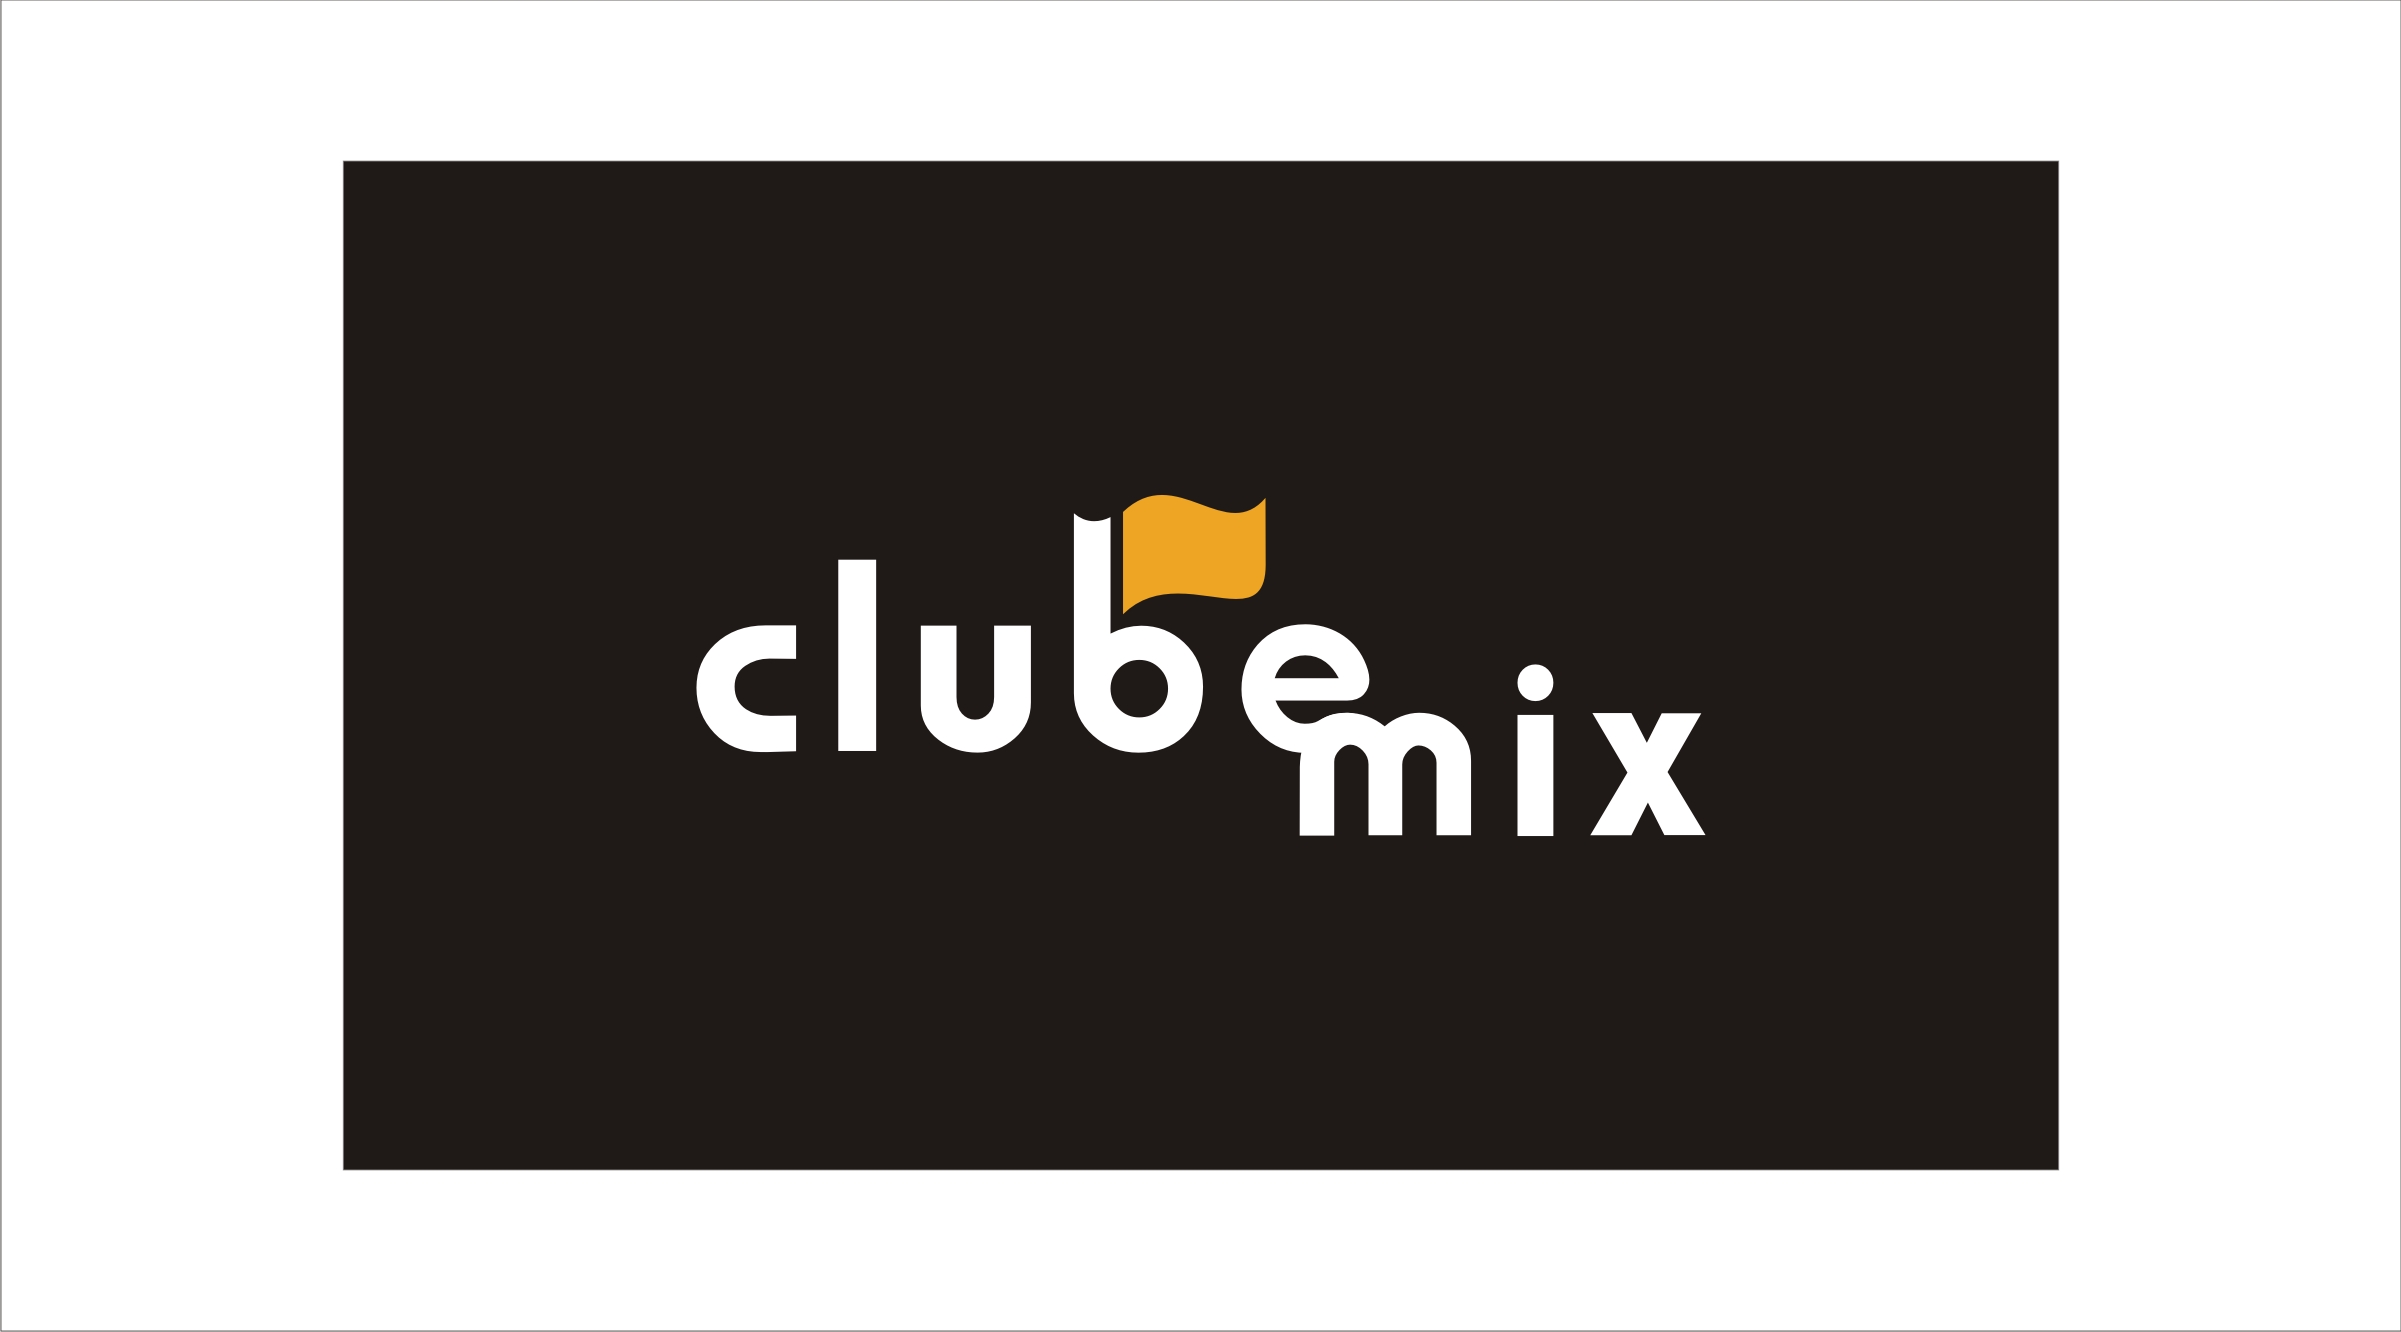 Clube Mix